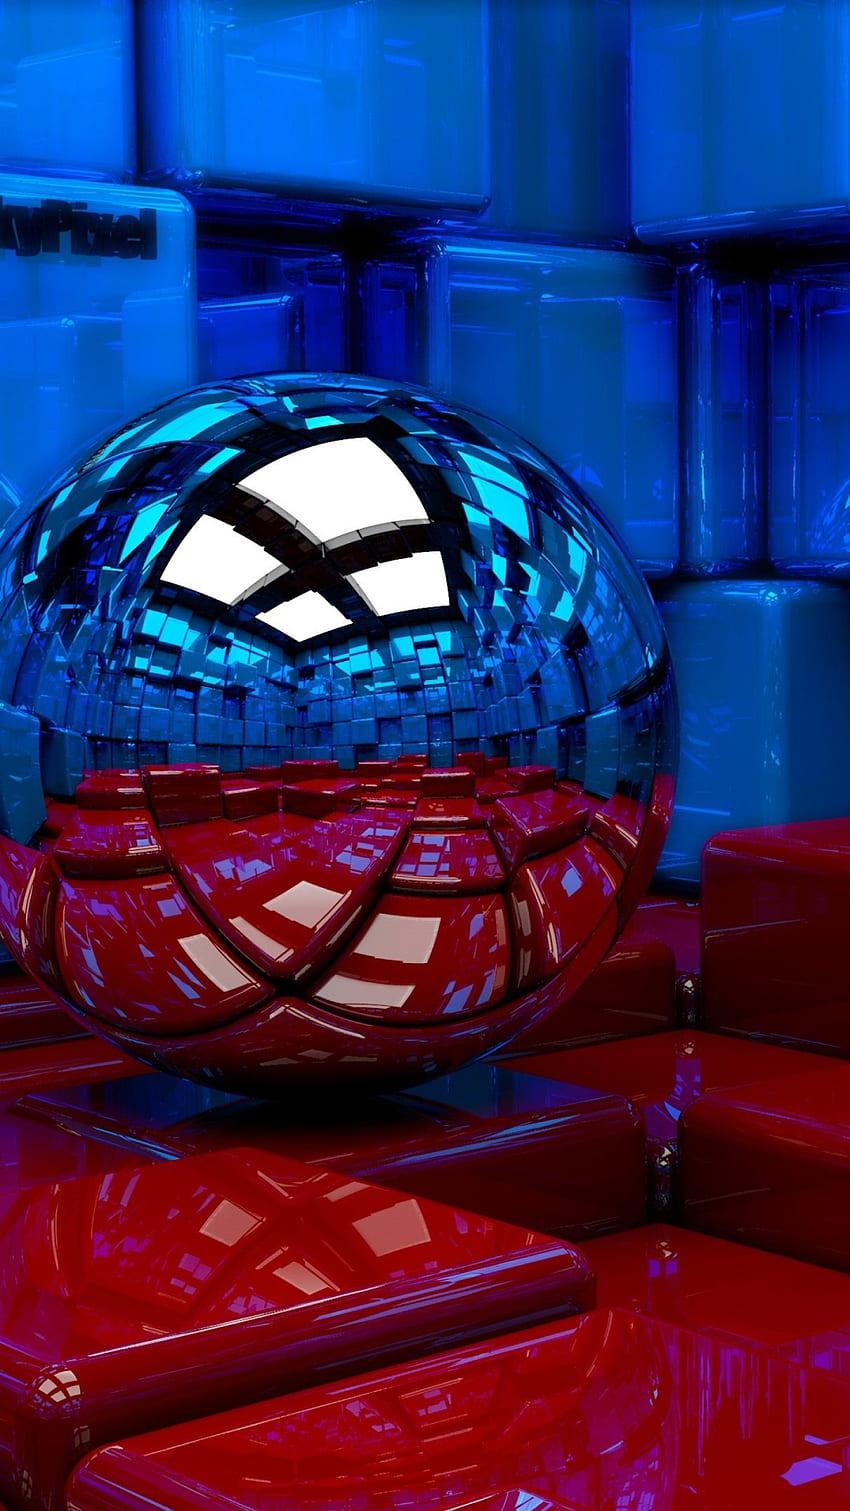 Blue Sphere Red Mirror là một hình ảnh độc đáo và gợi cảm hứng. Với màu xanh da trời và hình ảnh quả cầu vàng, bạn sẽ nhìn thấy một thế giới mới mở ra trước mắt. Hãy cùng khám phá và tìm hiểu thêm về hình ảnh này để có trải nghiệm thú vị nhất.